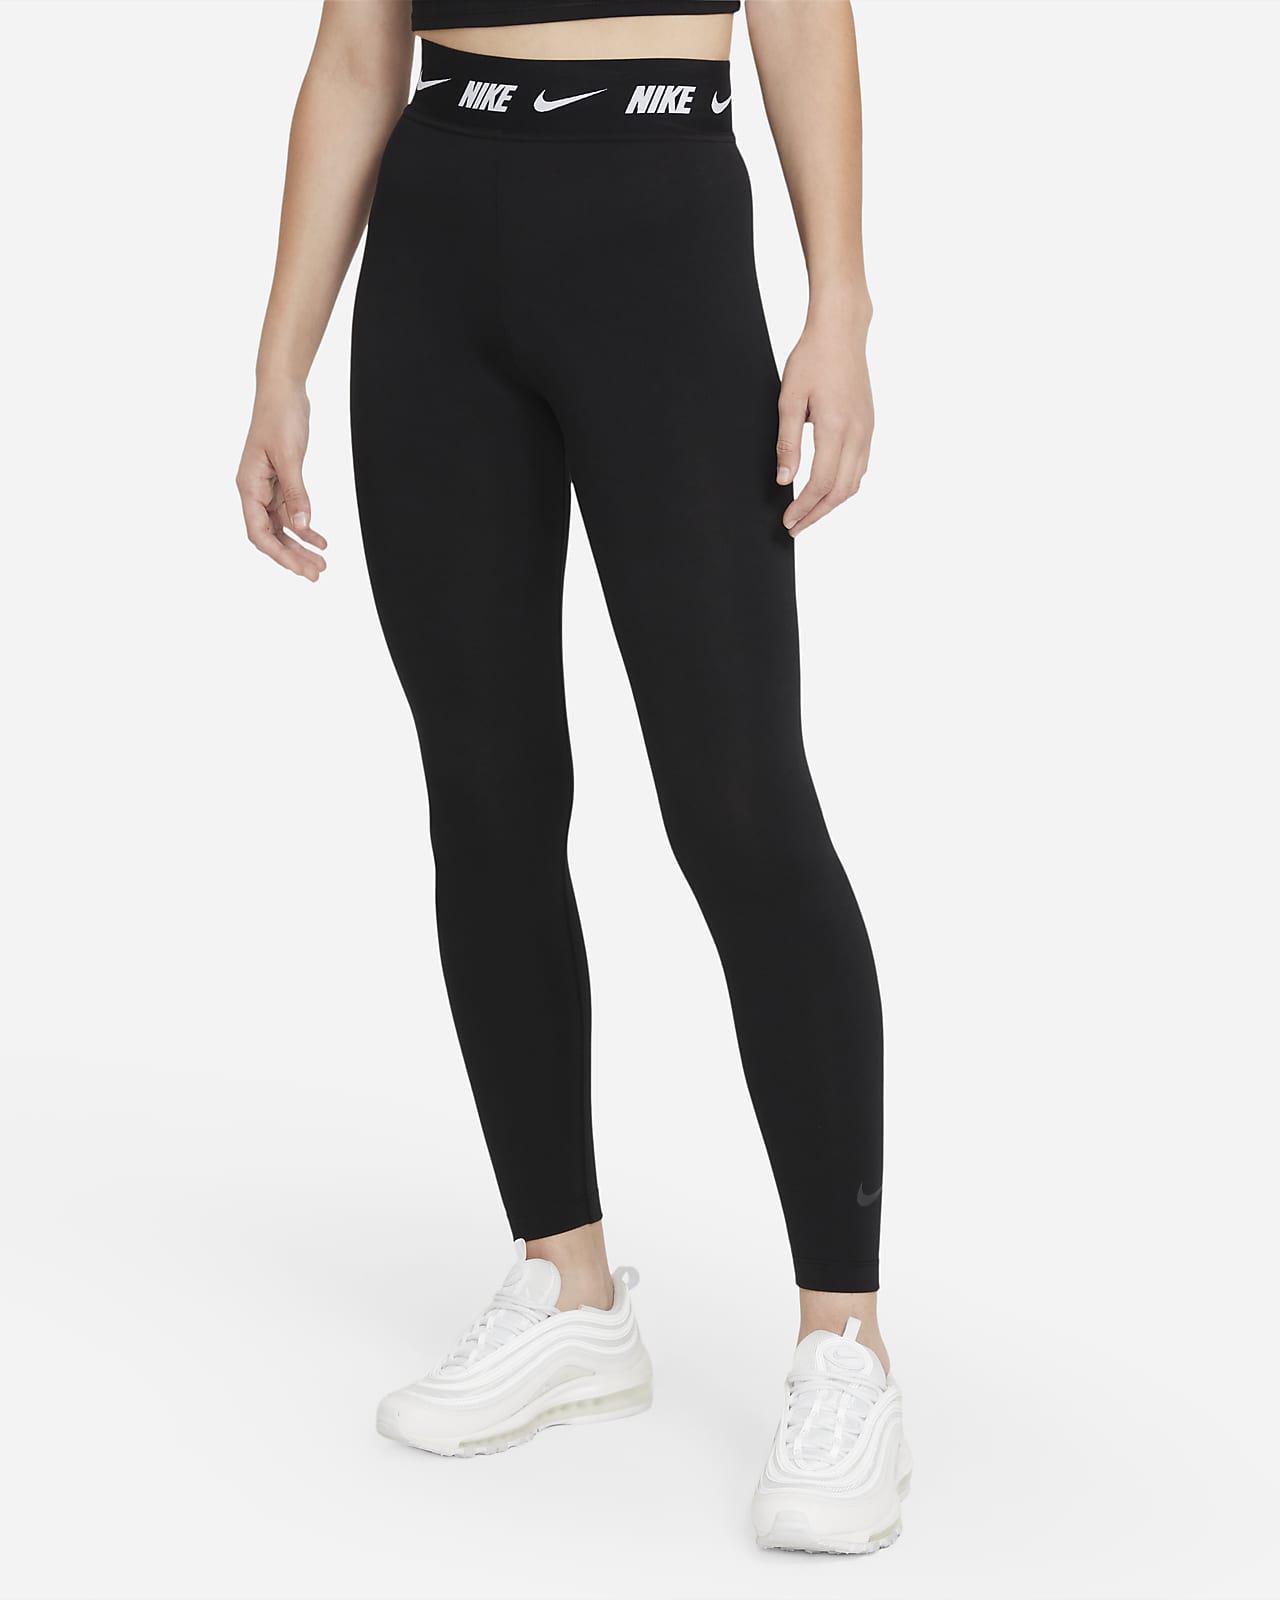 Nike Sportswear Club Legging met hoge taille voor dames